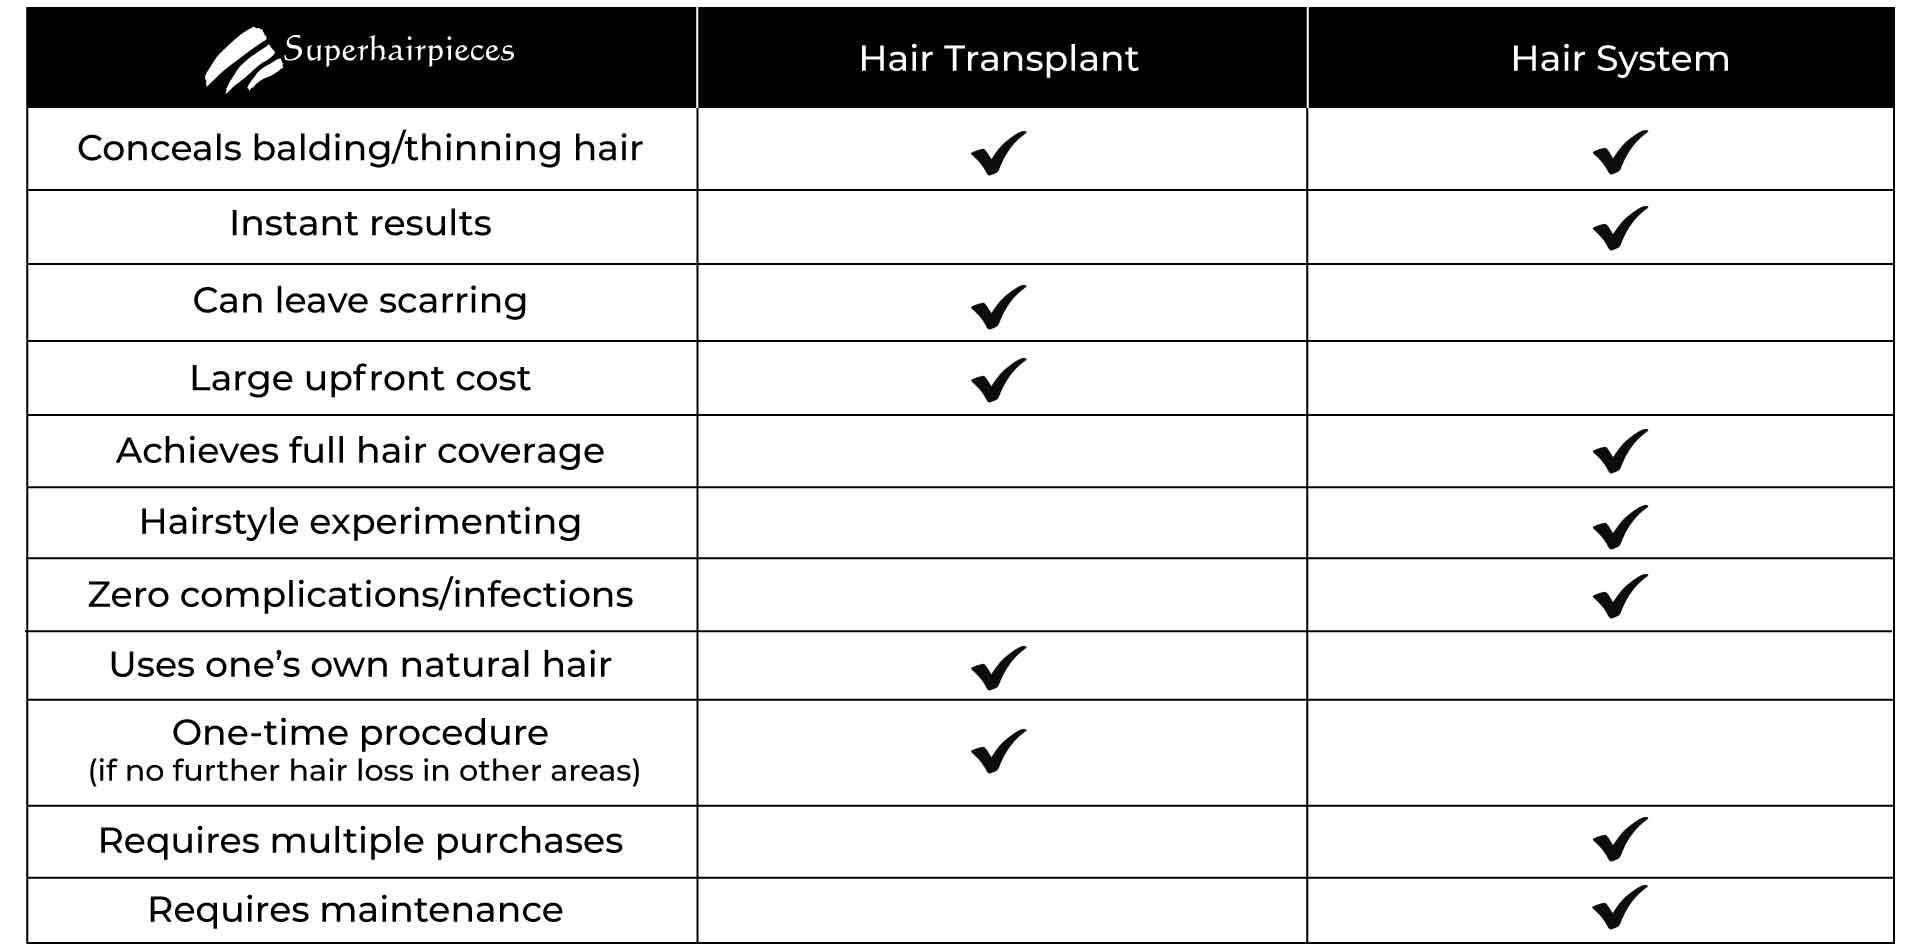 Hair Transplants vs Hair Systems